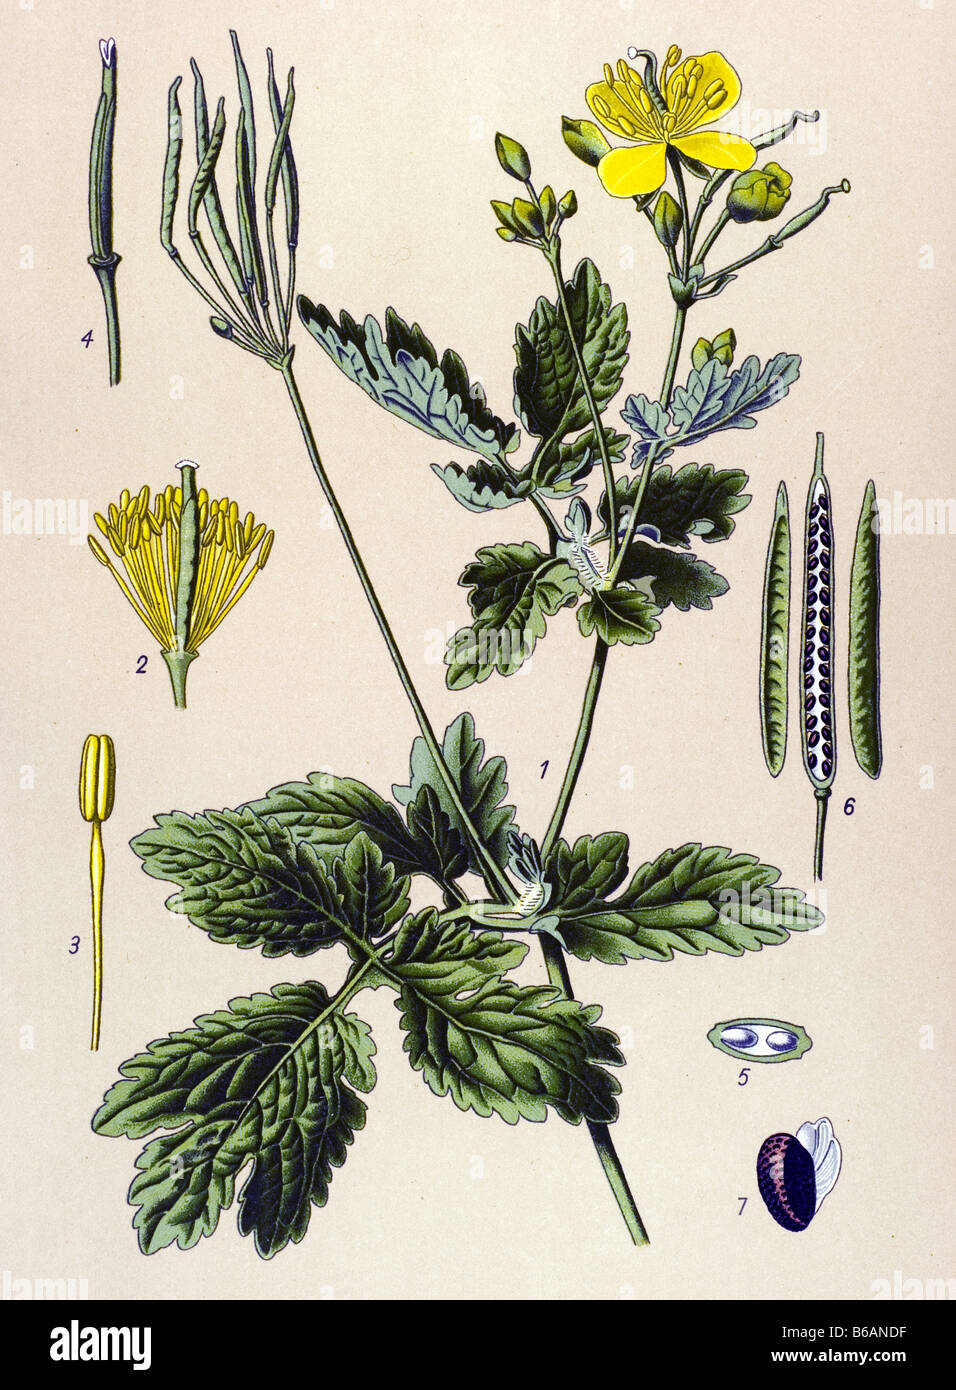 Tetterwort, Chelidonium majus poisonous plants illustrations Stock Photo